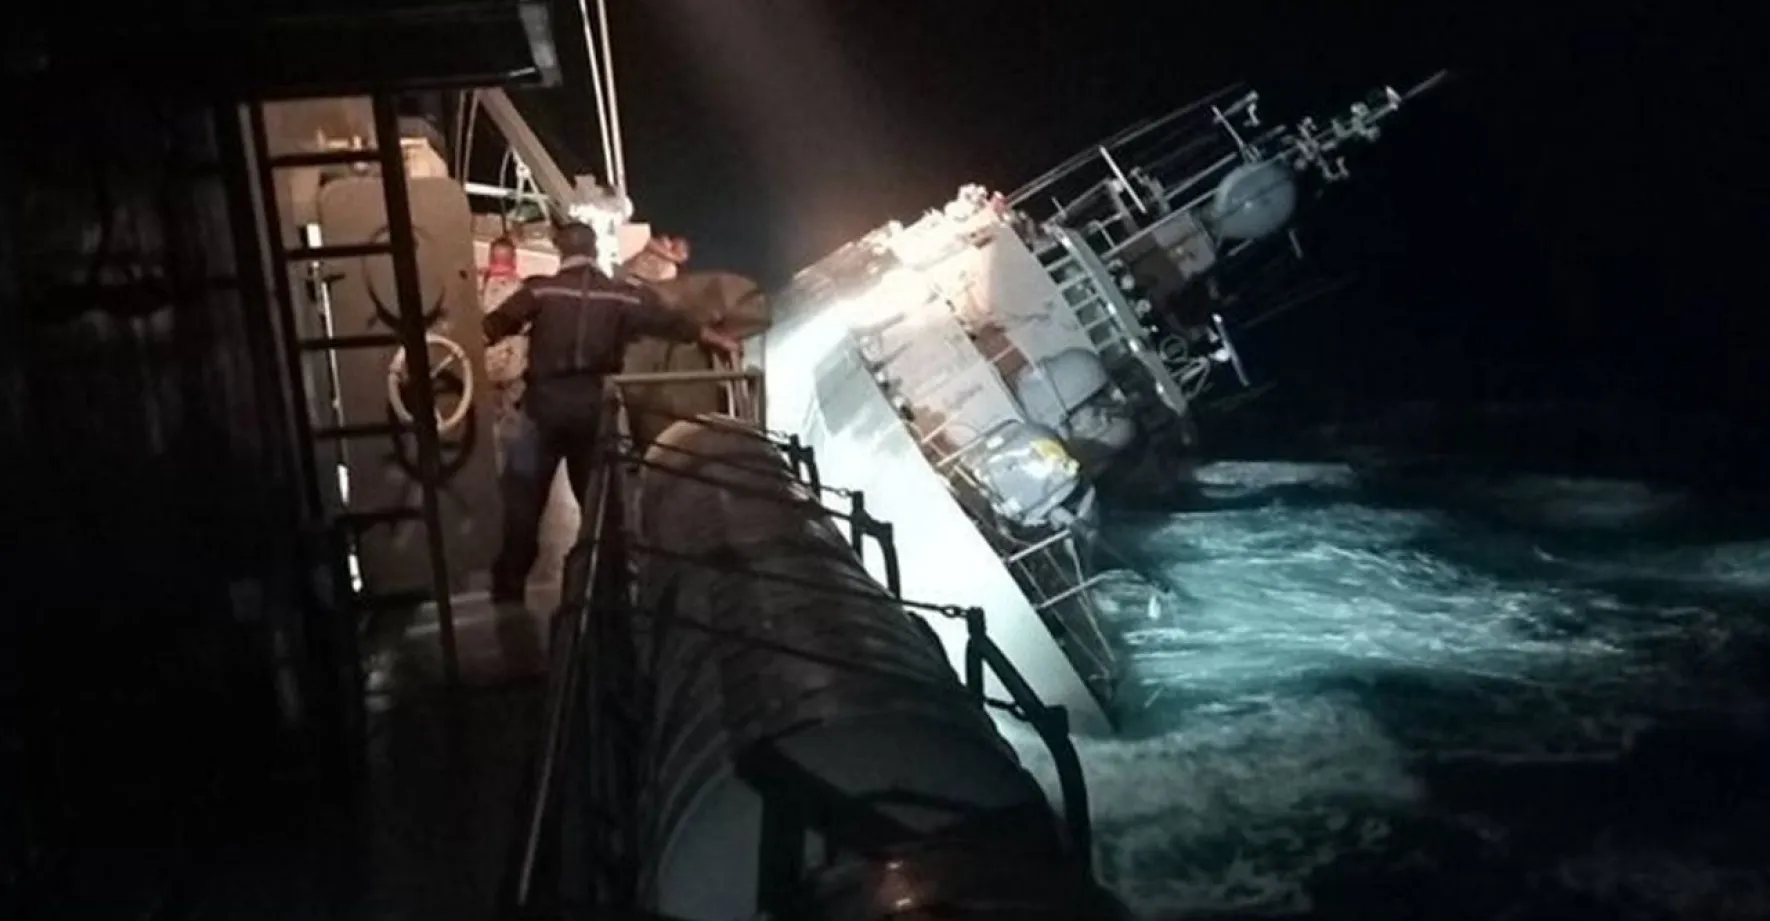 Havarovala válečná loď thajského námořnictva. Pohřešuje se 31 členů posádky